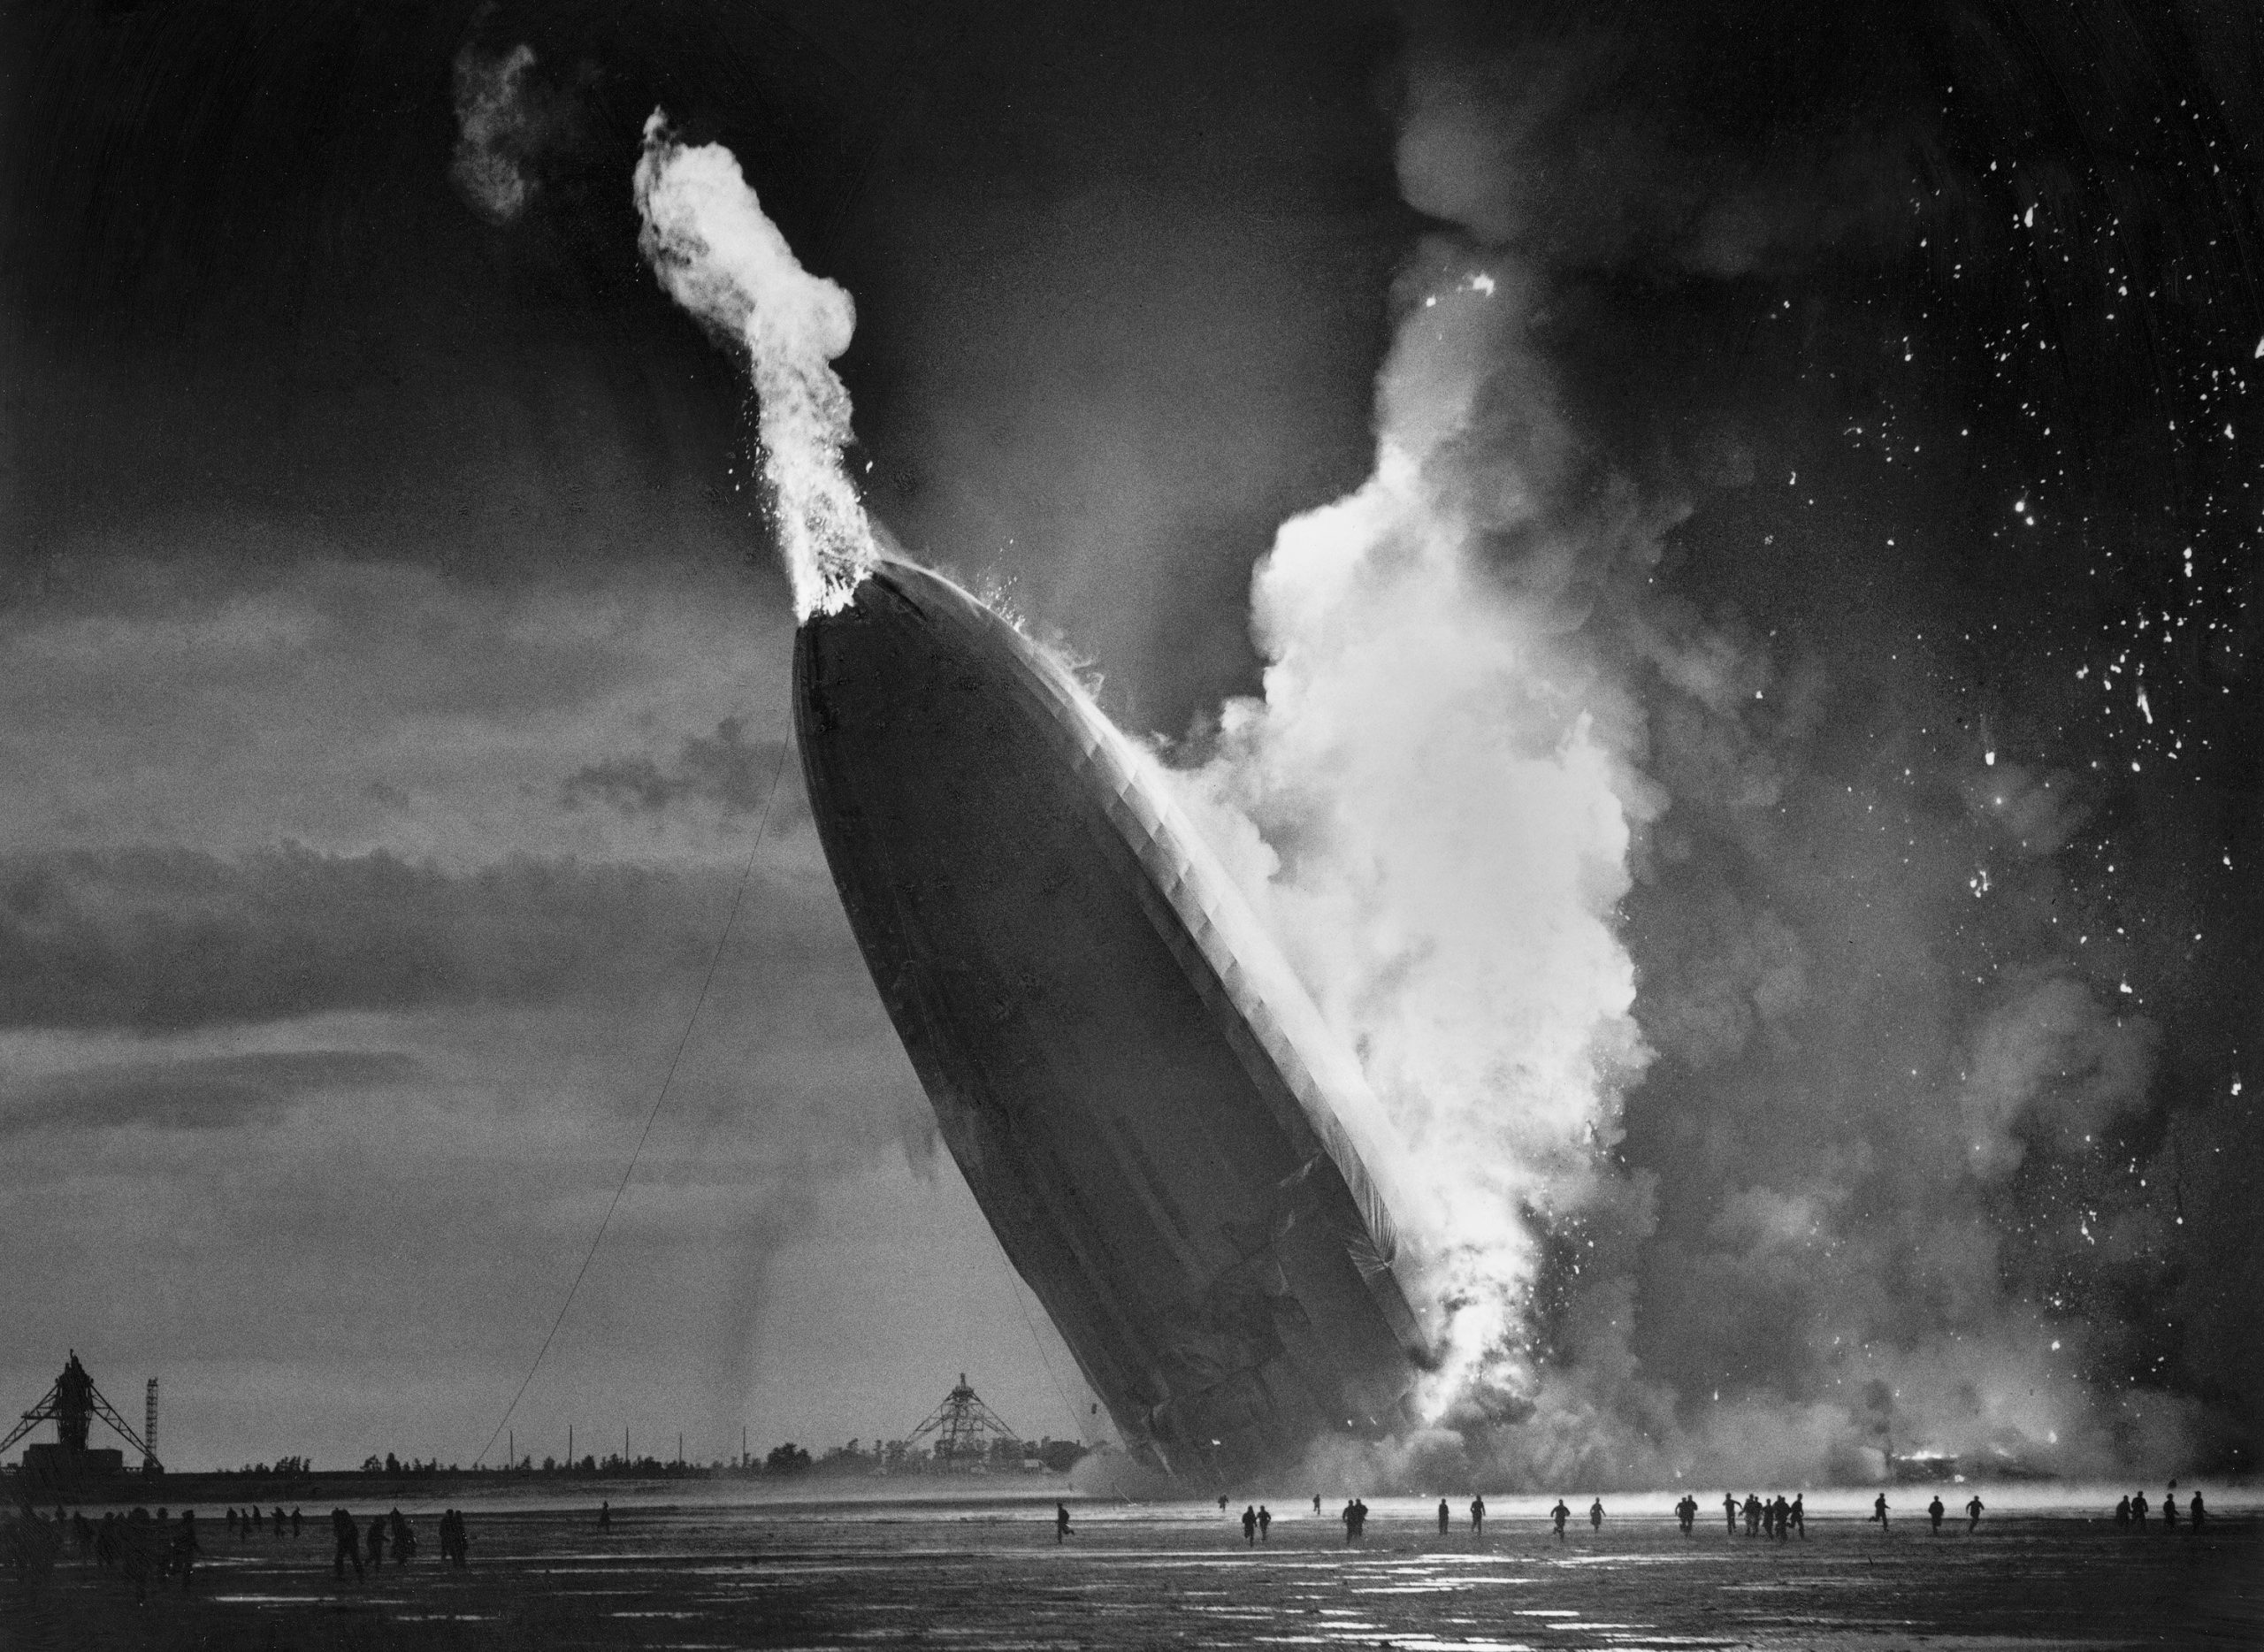 Una de las fotos en blanco y negro que retrata la tragedia de Hindenburg